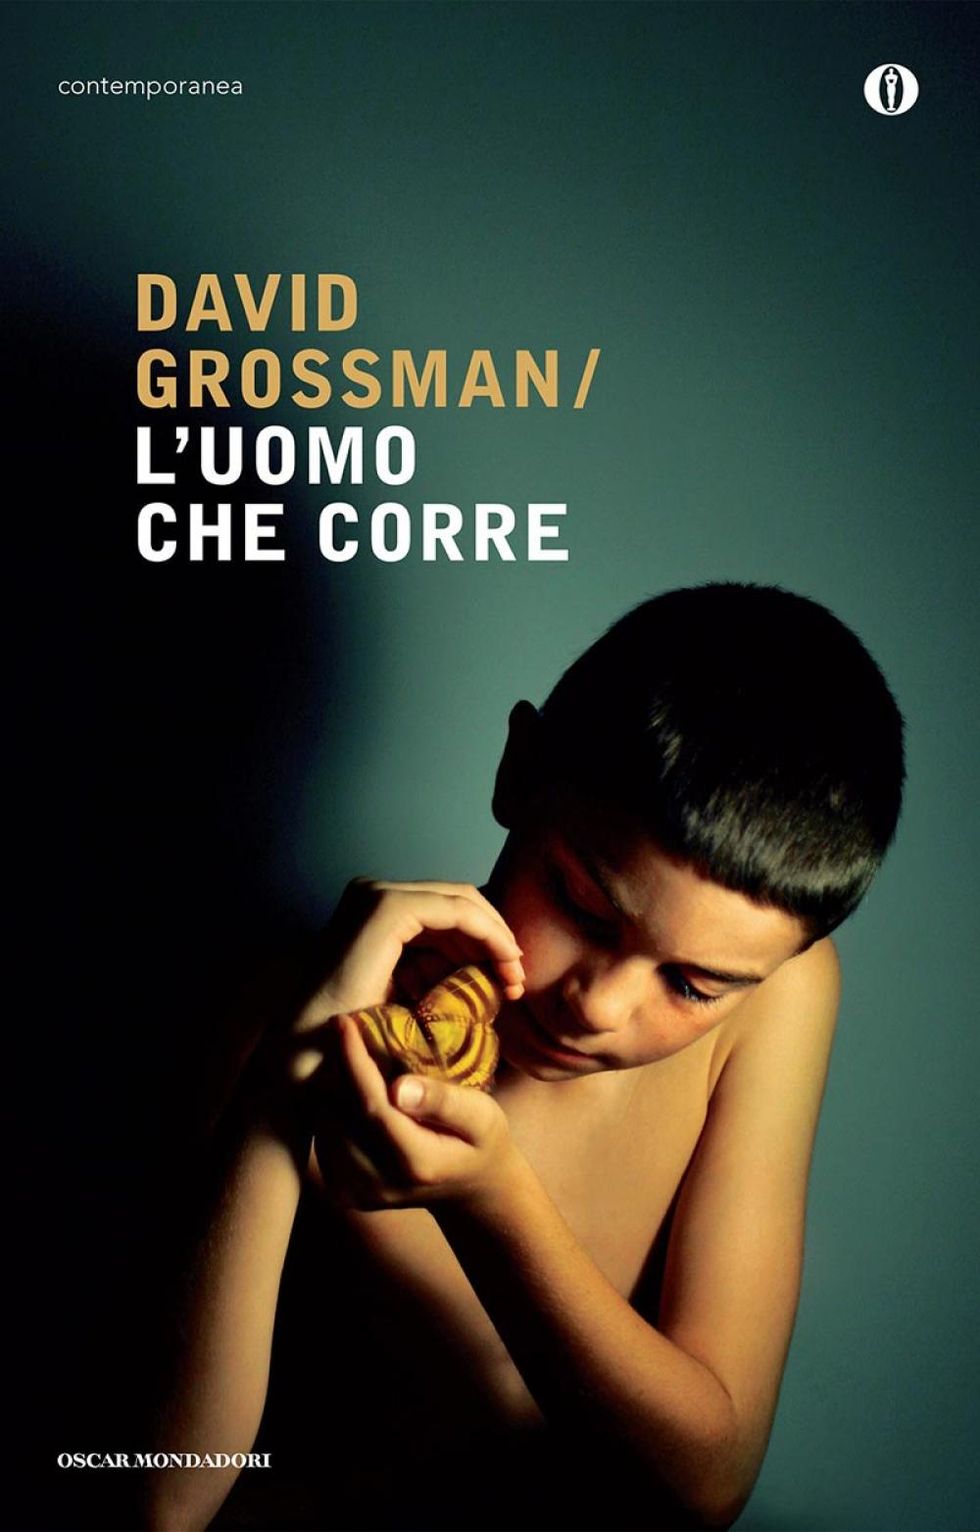 La cover di “L’uomo che corre” di David Grossman, ed. Oscar Mondadori